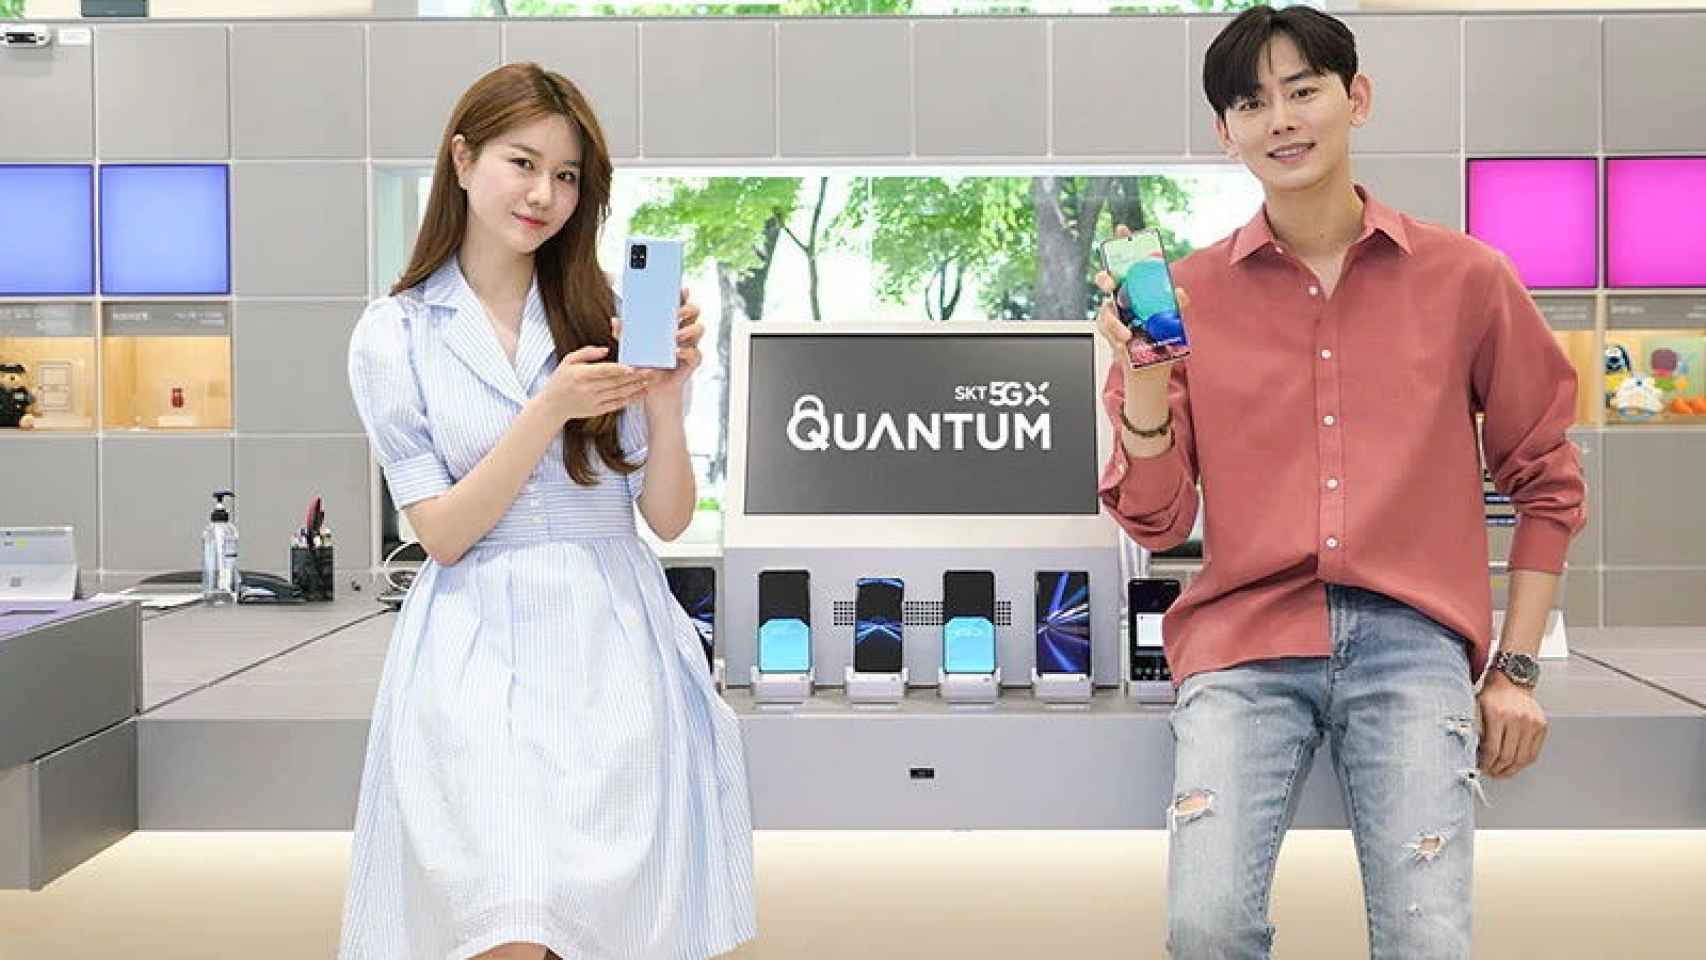 Este nuevo móvil de Samsung usa tecnología cuántica: ¿para qué sirve y por qué es tan importante?